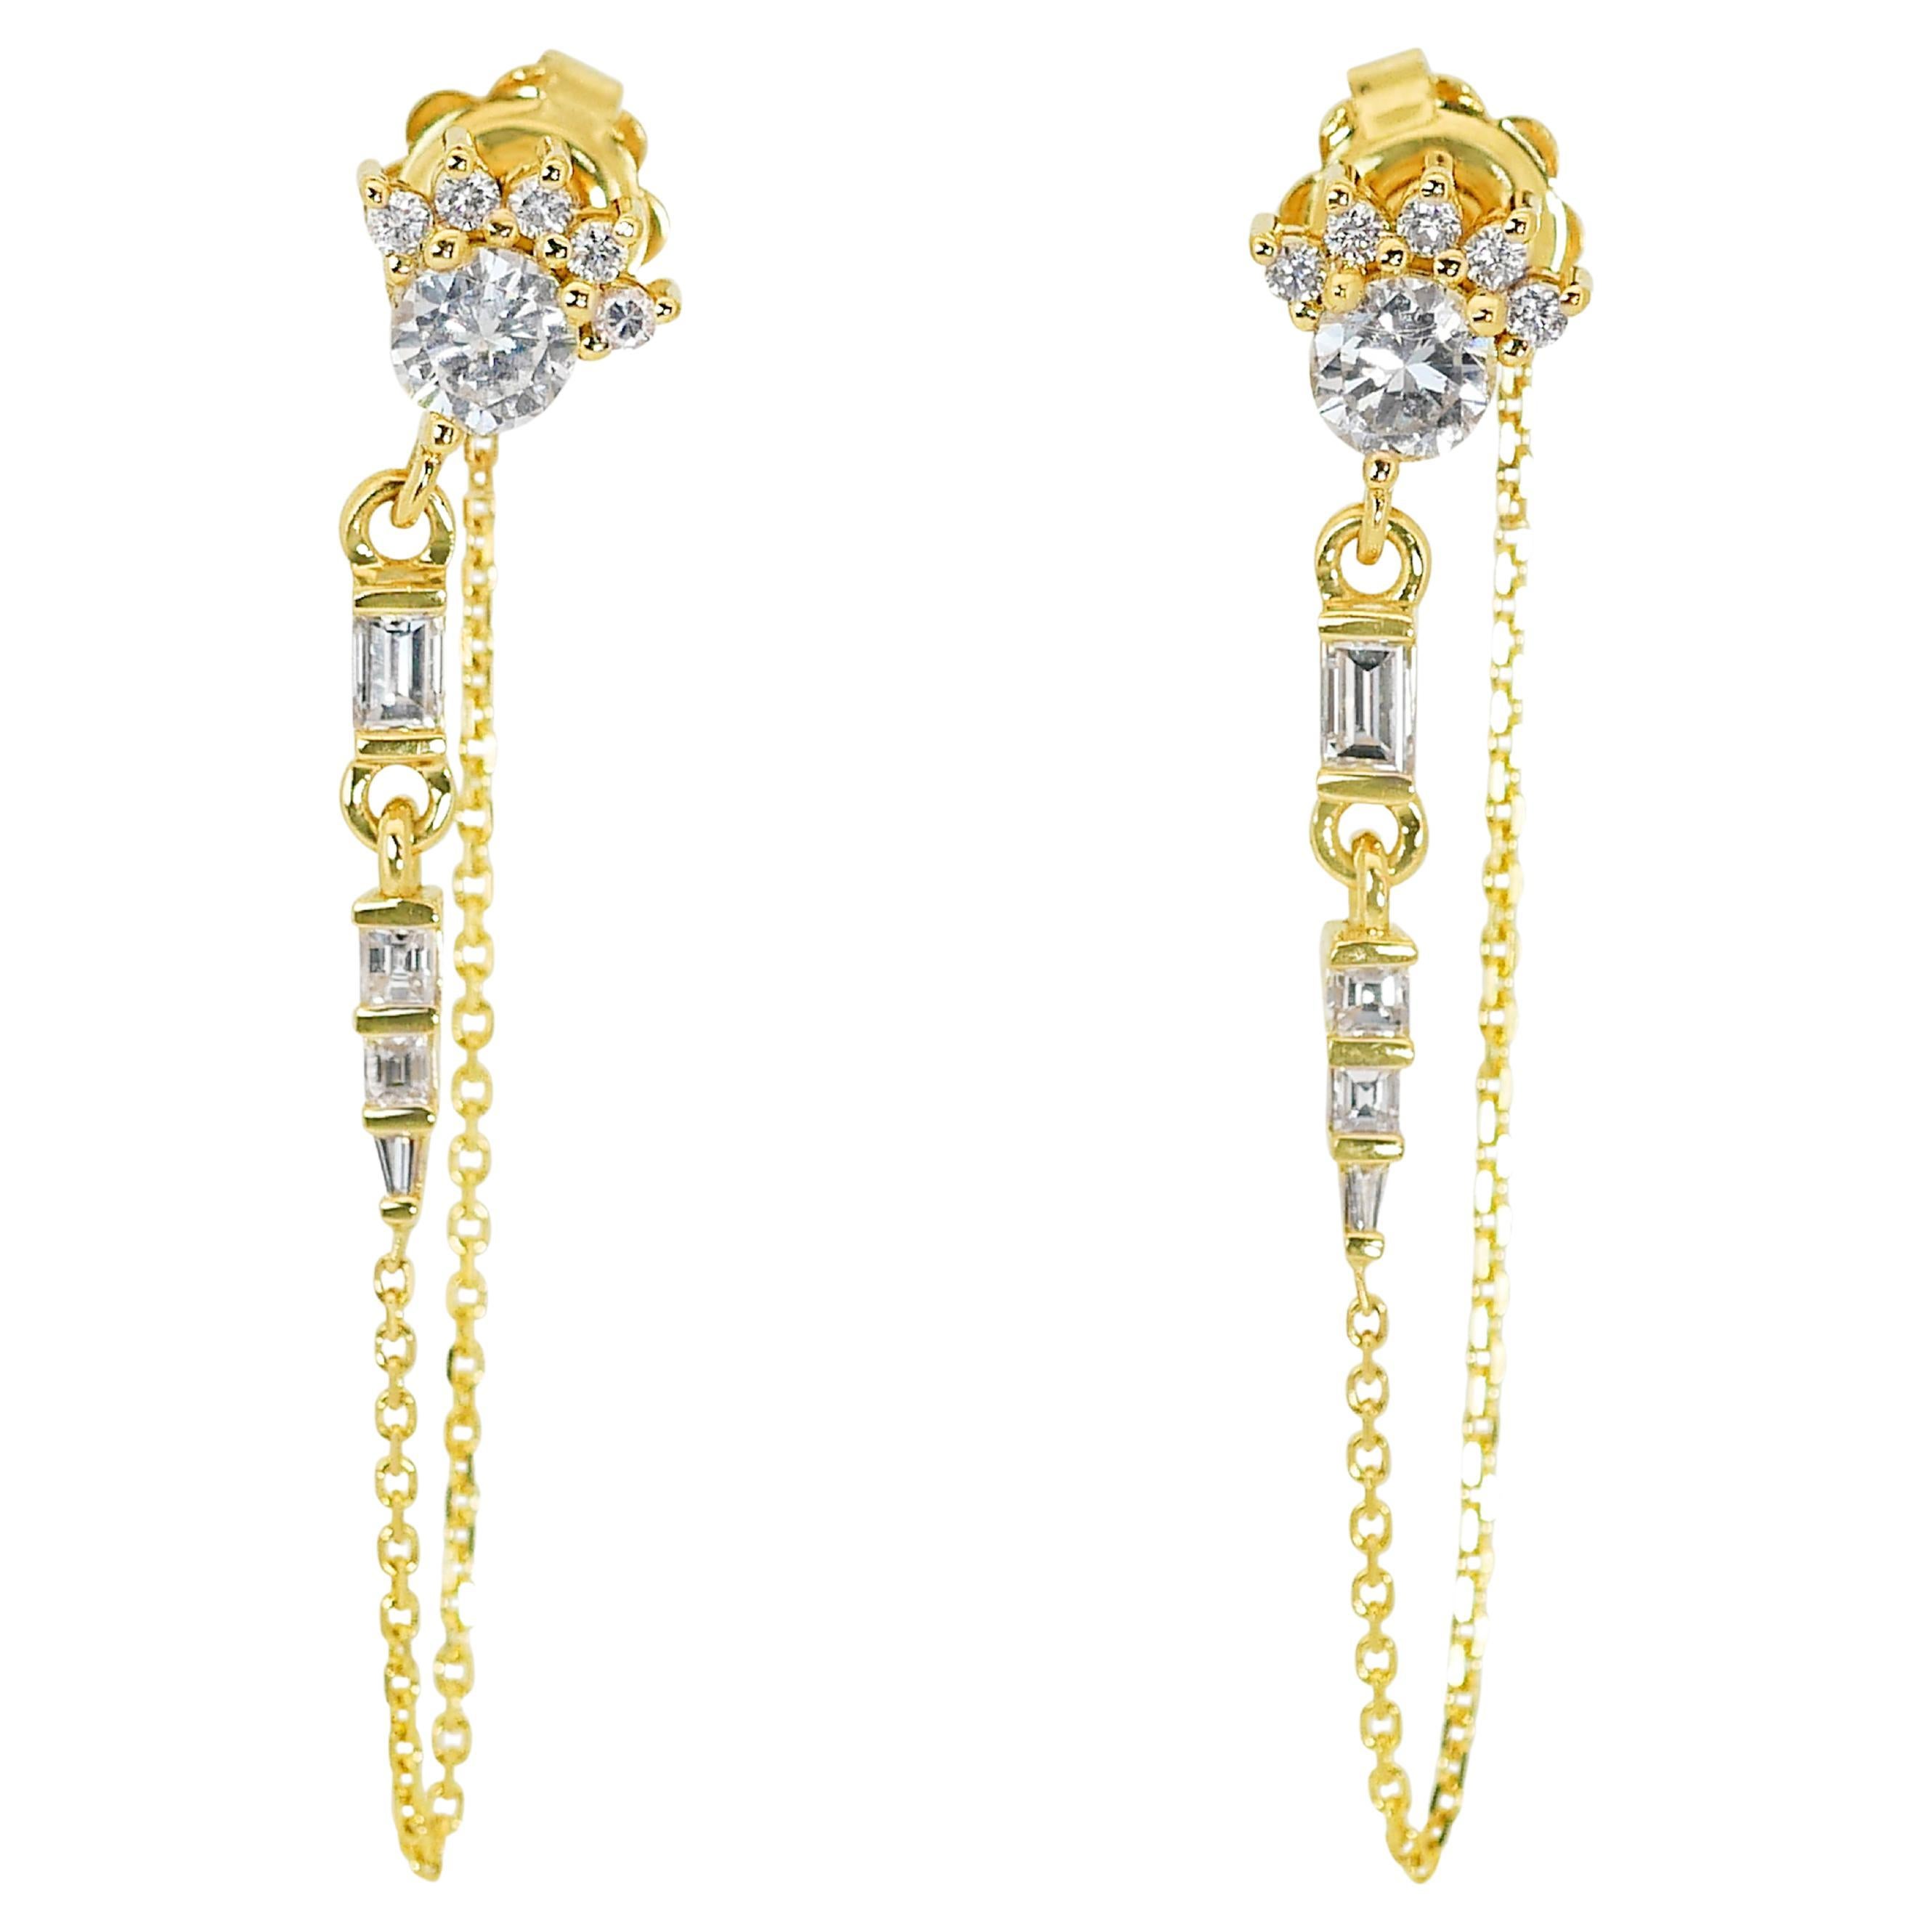 Boucles d'oreilles pendantes en or jaune 18 carats avec diamants de 1,19 carat, certifiés IGI